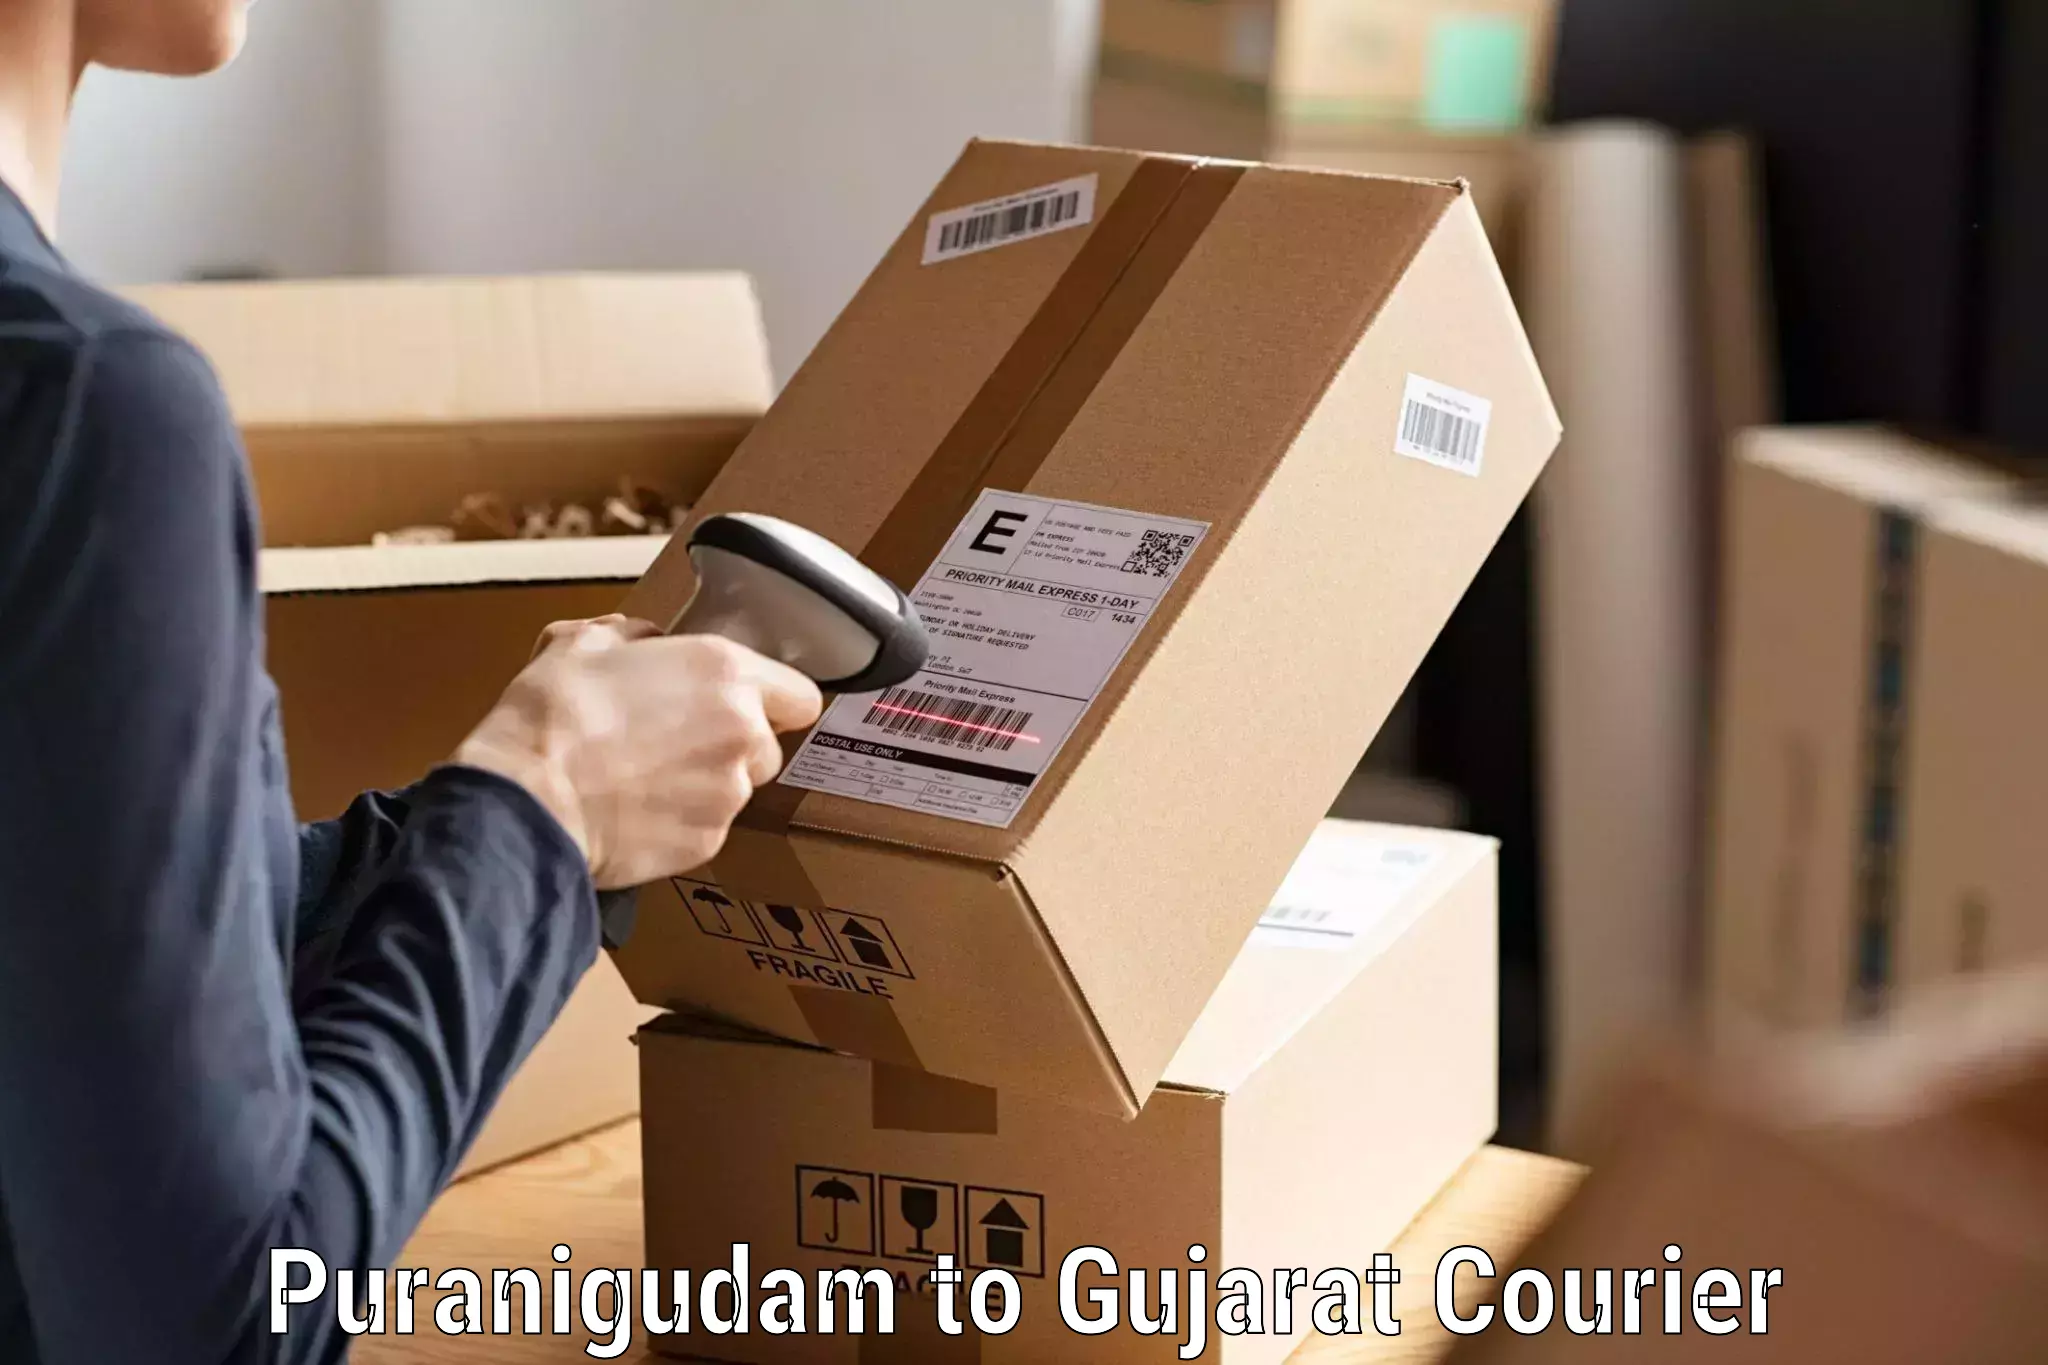 Express delivery network Puranigudam to Gujarat